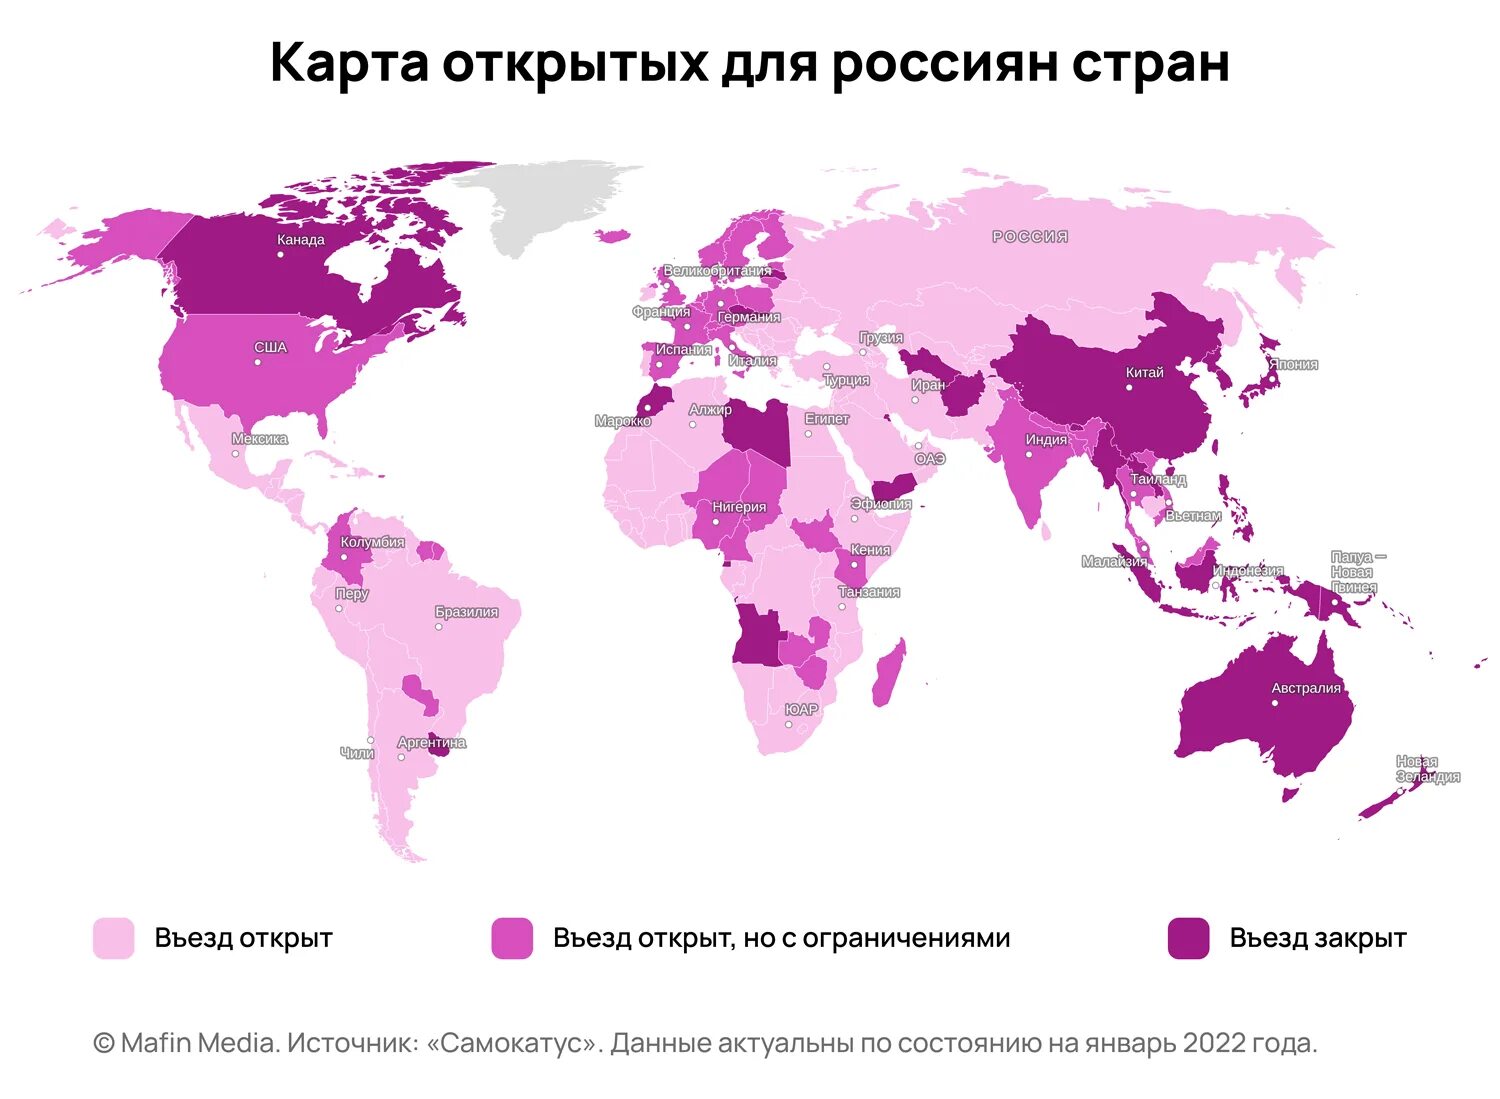 Заграница страны. Карта открытых стран для россиян 2022. Открытые страны для россиян 2022. Какие страны открыты для россиян в 2022. Какие страны сейчас открыты для россиян 2022.